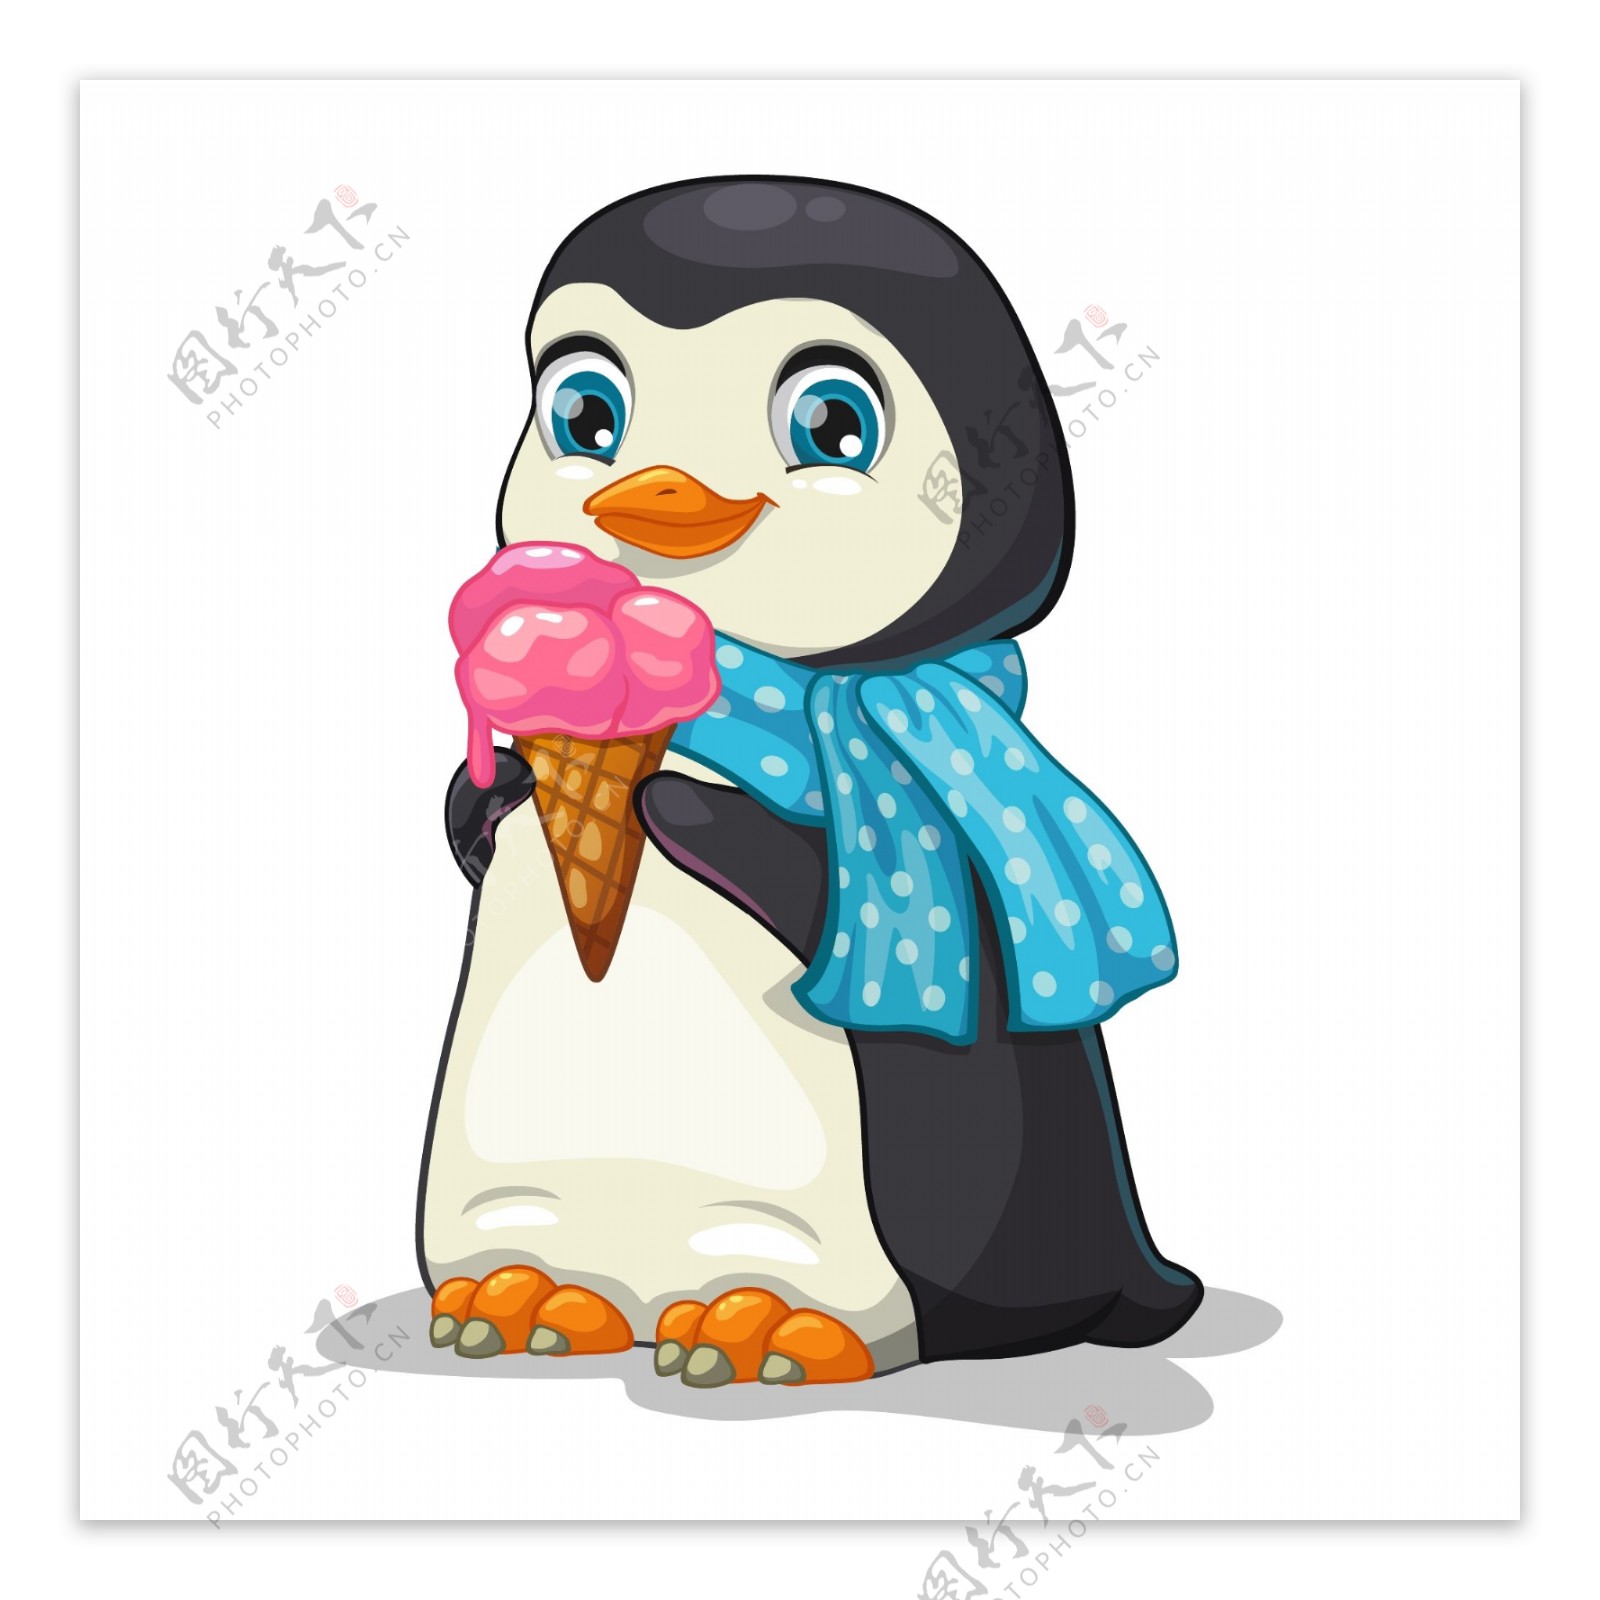 吃冰淇淋的企鹅